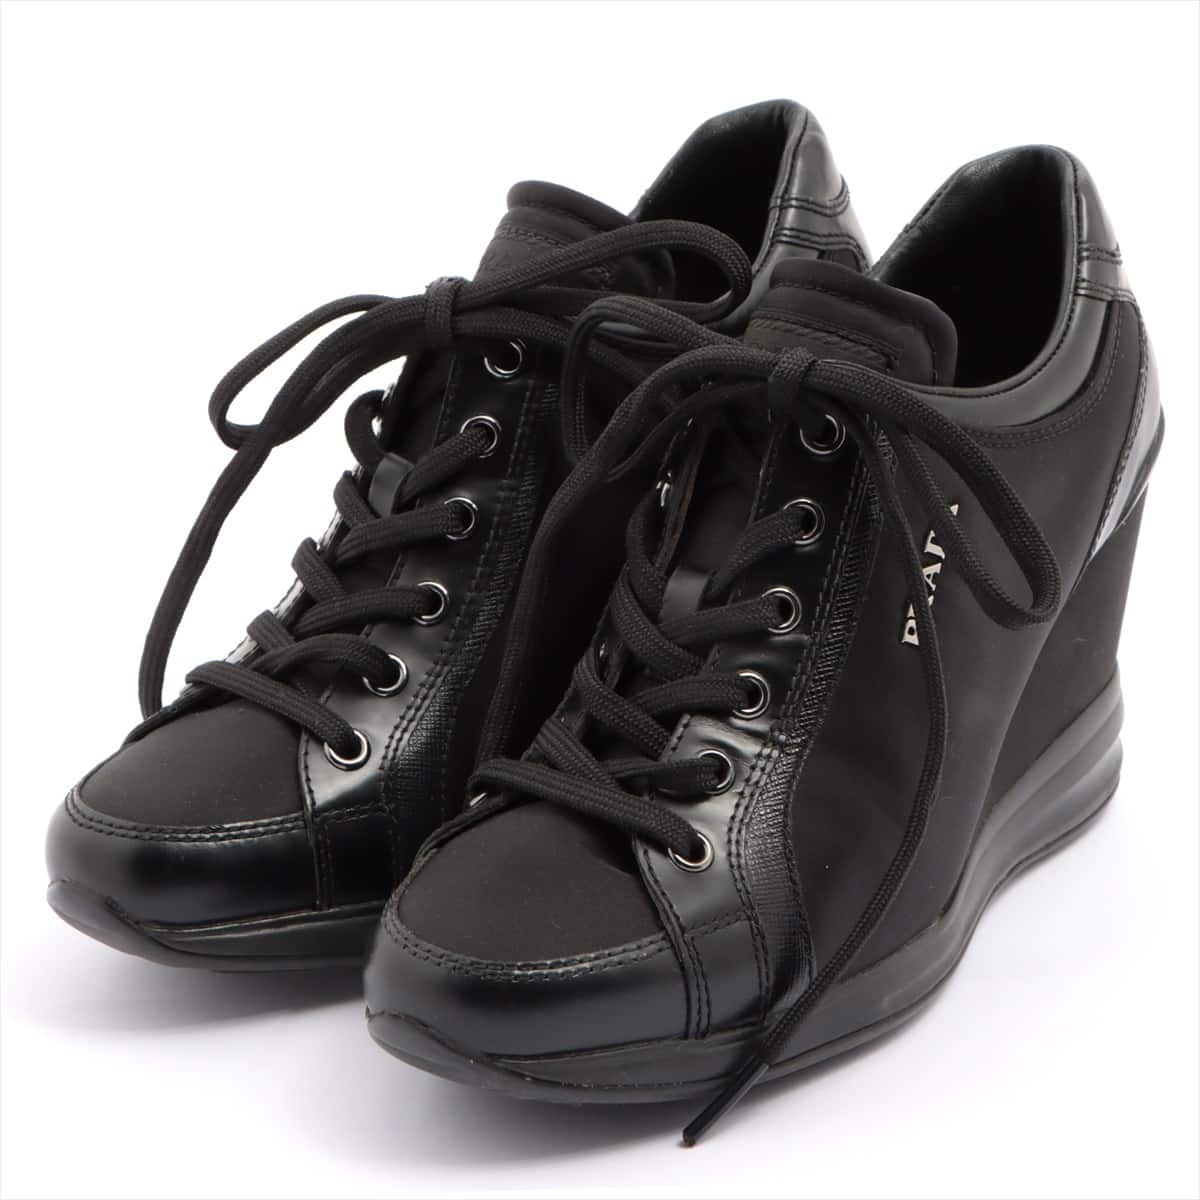 Prada Sport Nylon & Leather Sneakers 35.5 Ladies' Black heeled sneakers